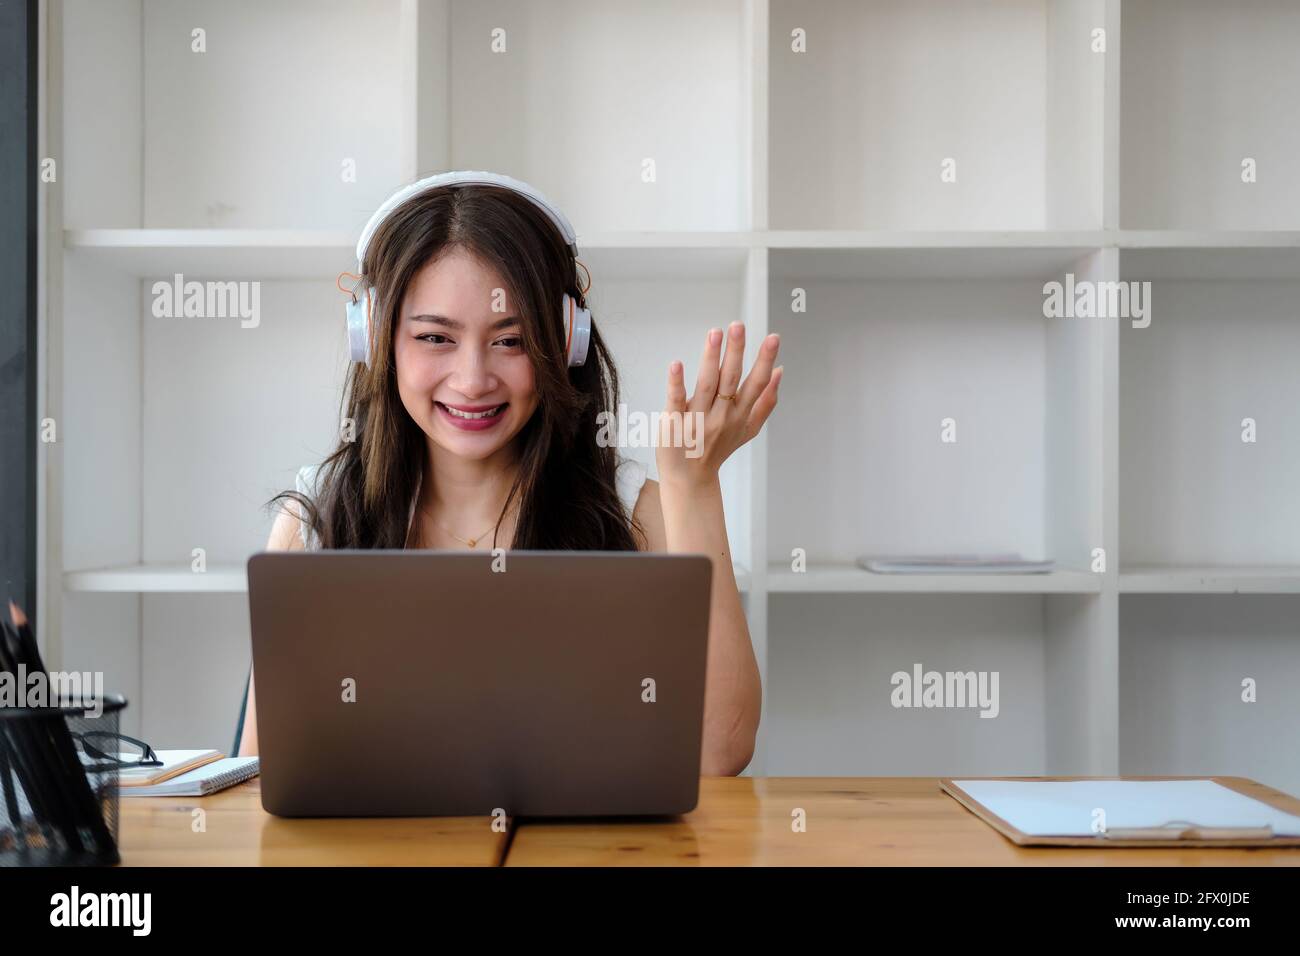 Vue latérale prise de vue en souriant femme asiatique indépendante portant un casque, communiquant avec le client via un appel vidéo sur ordinateur. Professionnel agréable millénaire Banque D'Images